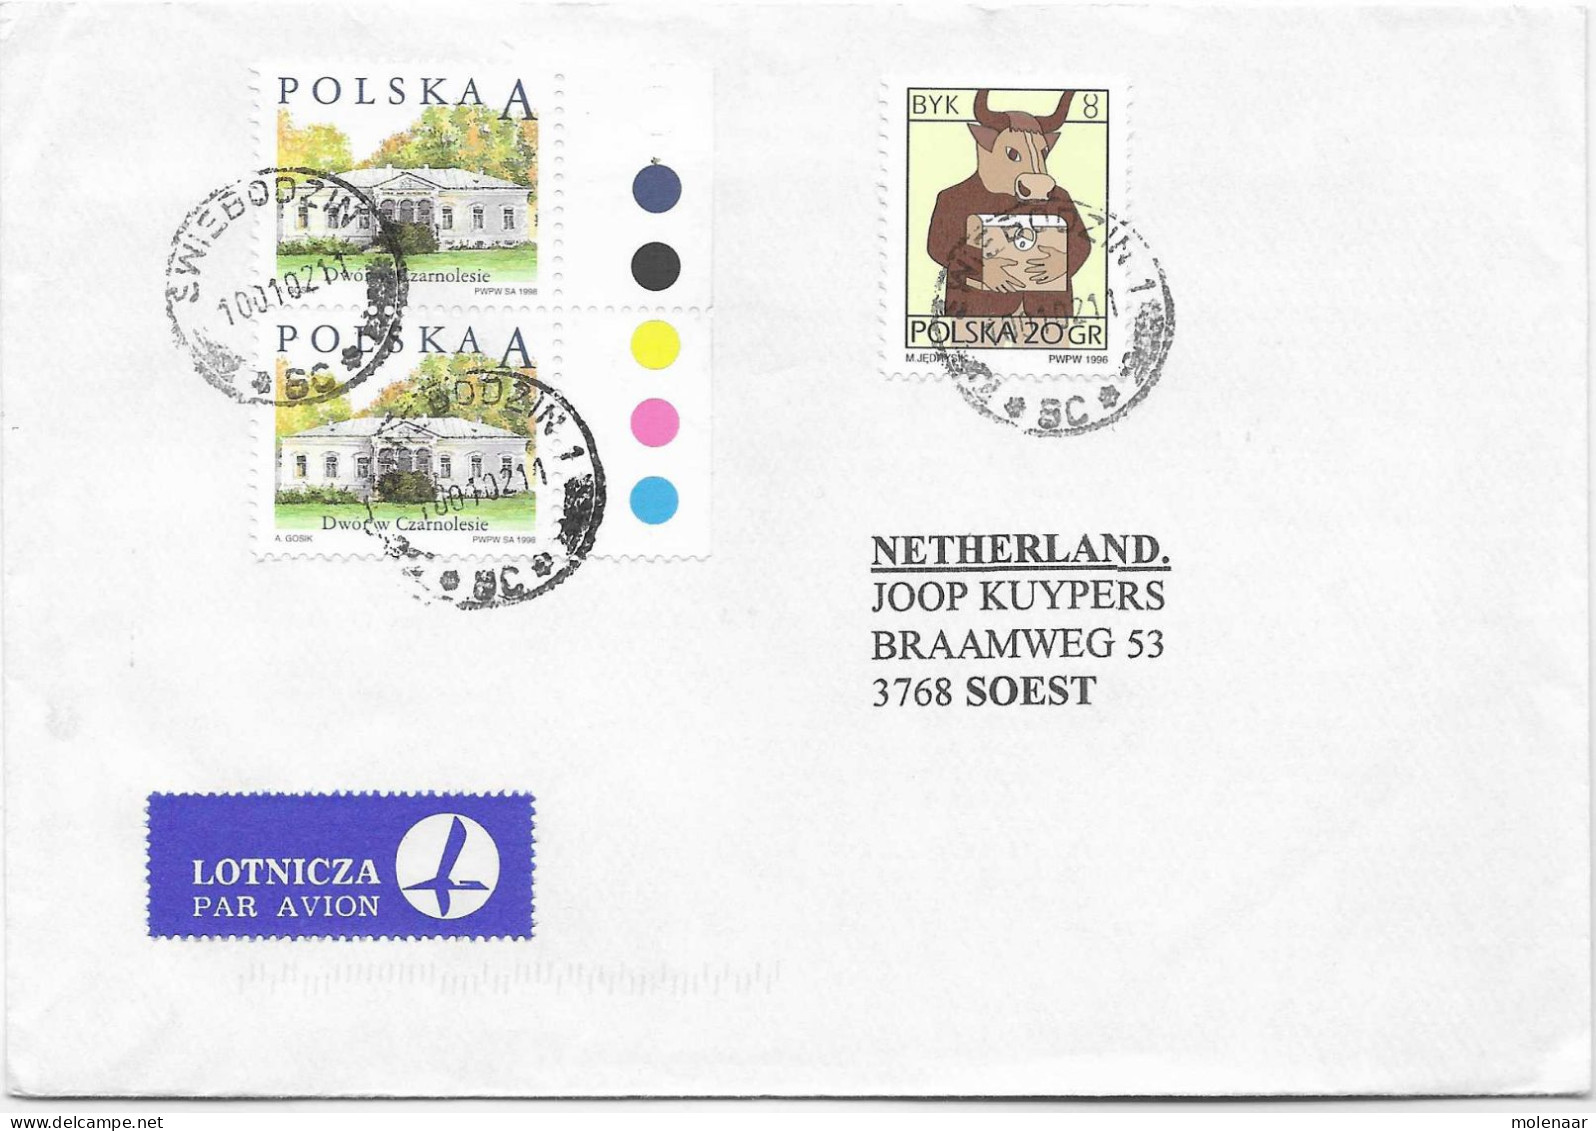 Postzegels > Europa > Polen > 1944-.... Republiek > 2001-10 > Brief Uit 2002 Met 3 Postzegels (17128) - Brieven En Documenten